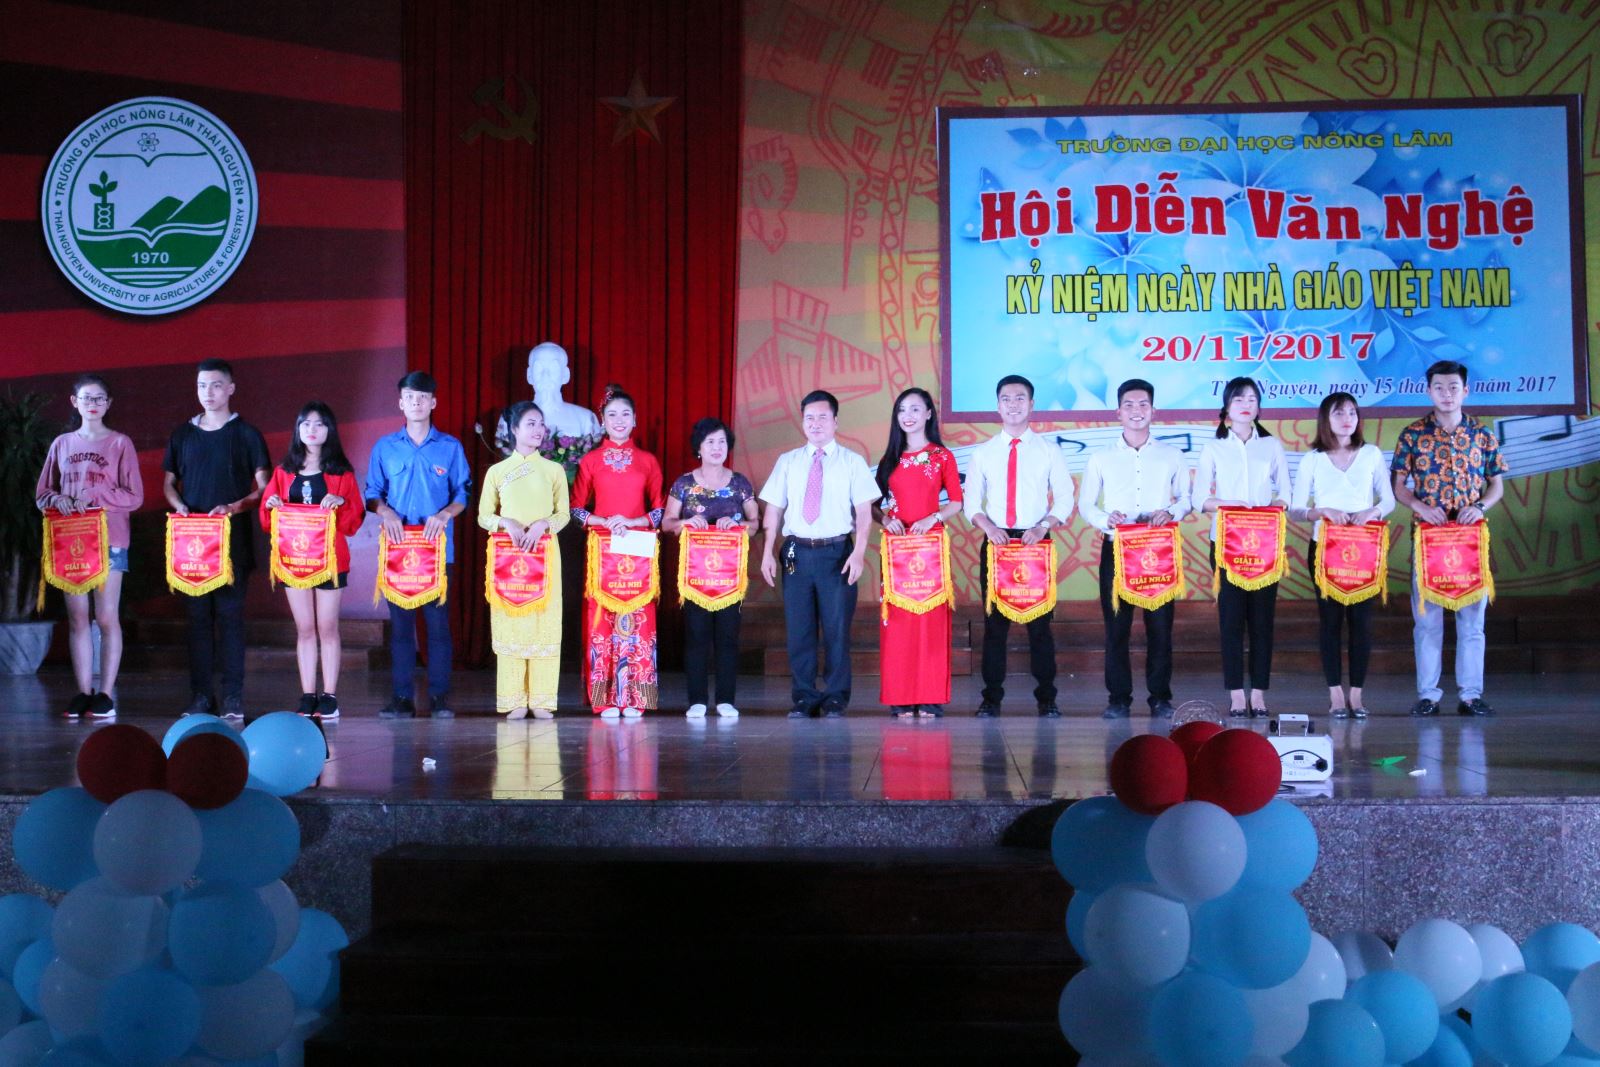 Hội diễn văn nghệ chào mừng kỷ niệm 35 năm ngày Nhà giáo  Việt Nam